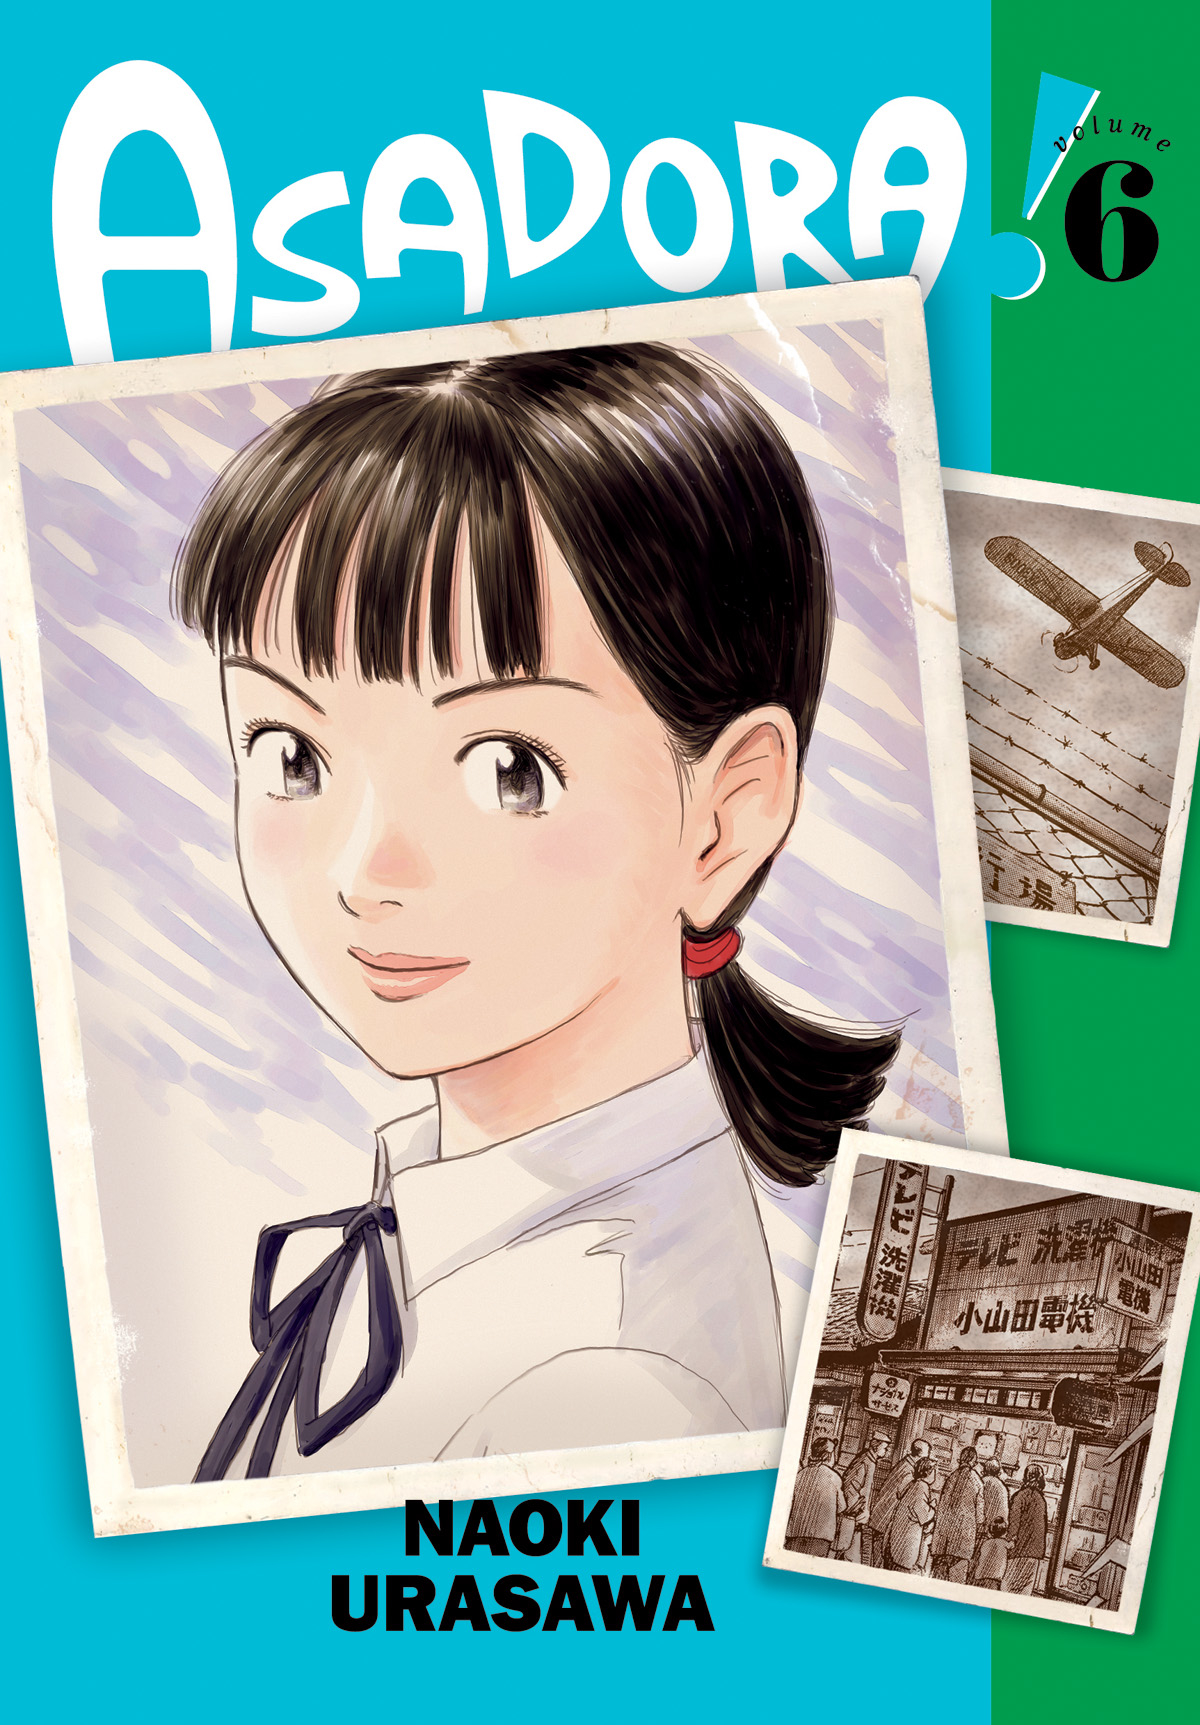 Asadora Manga Volume 6 (Mature)